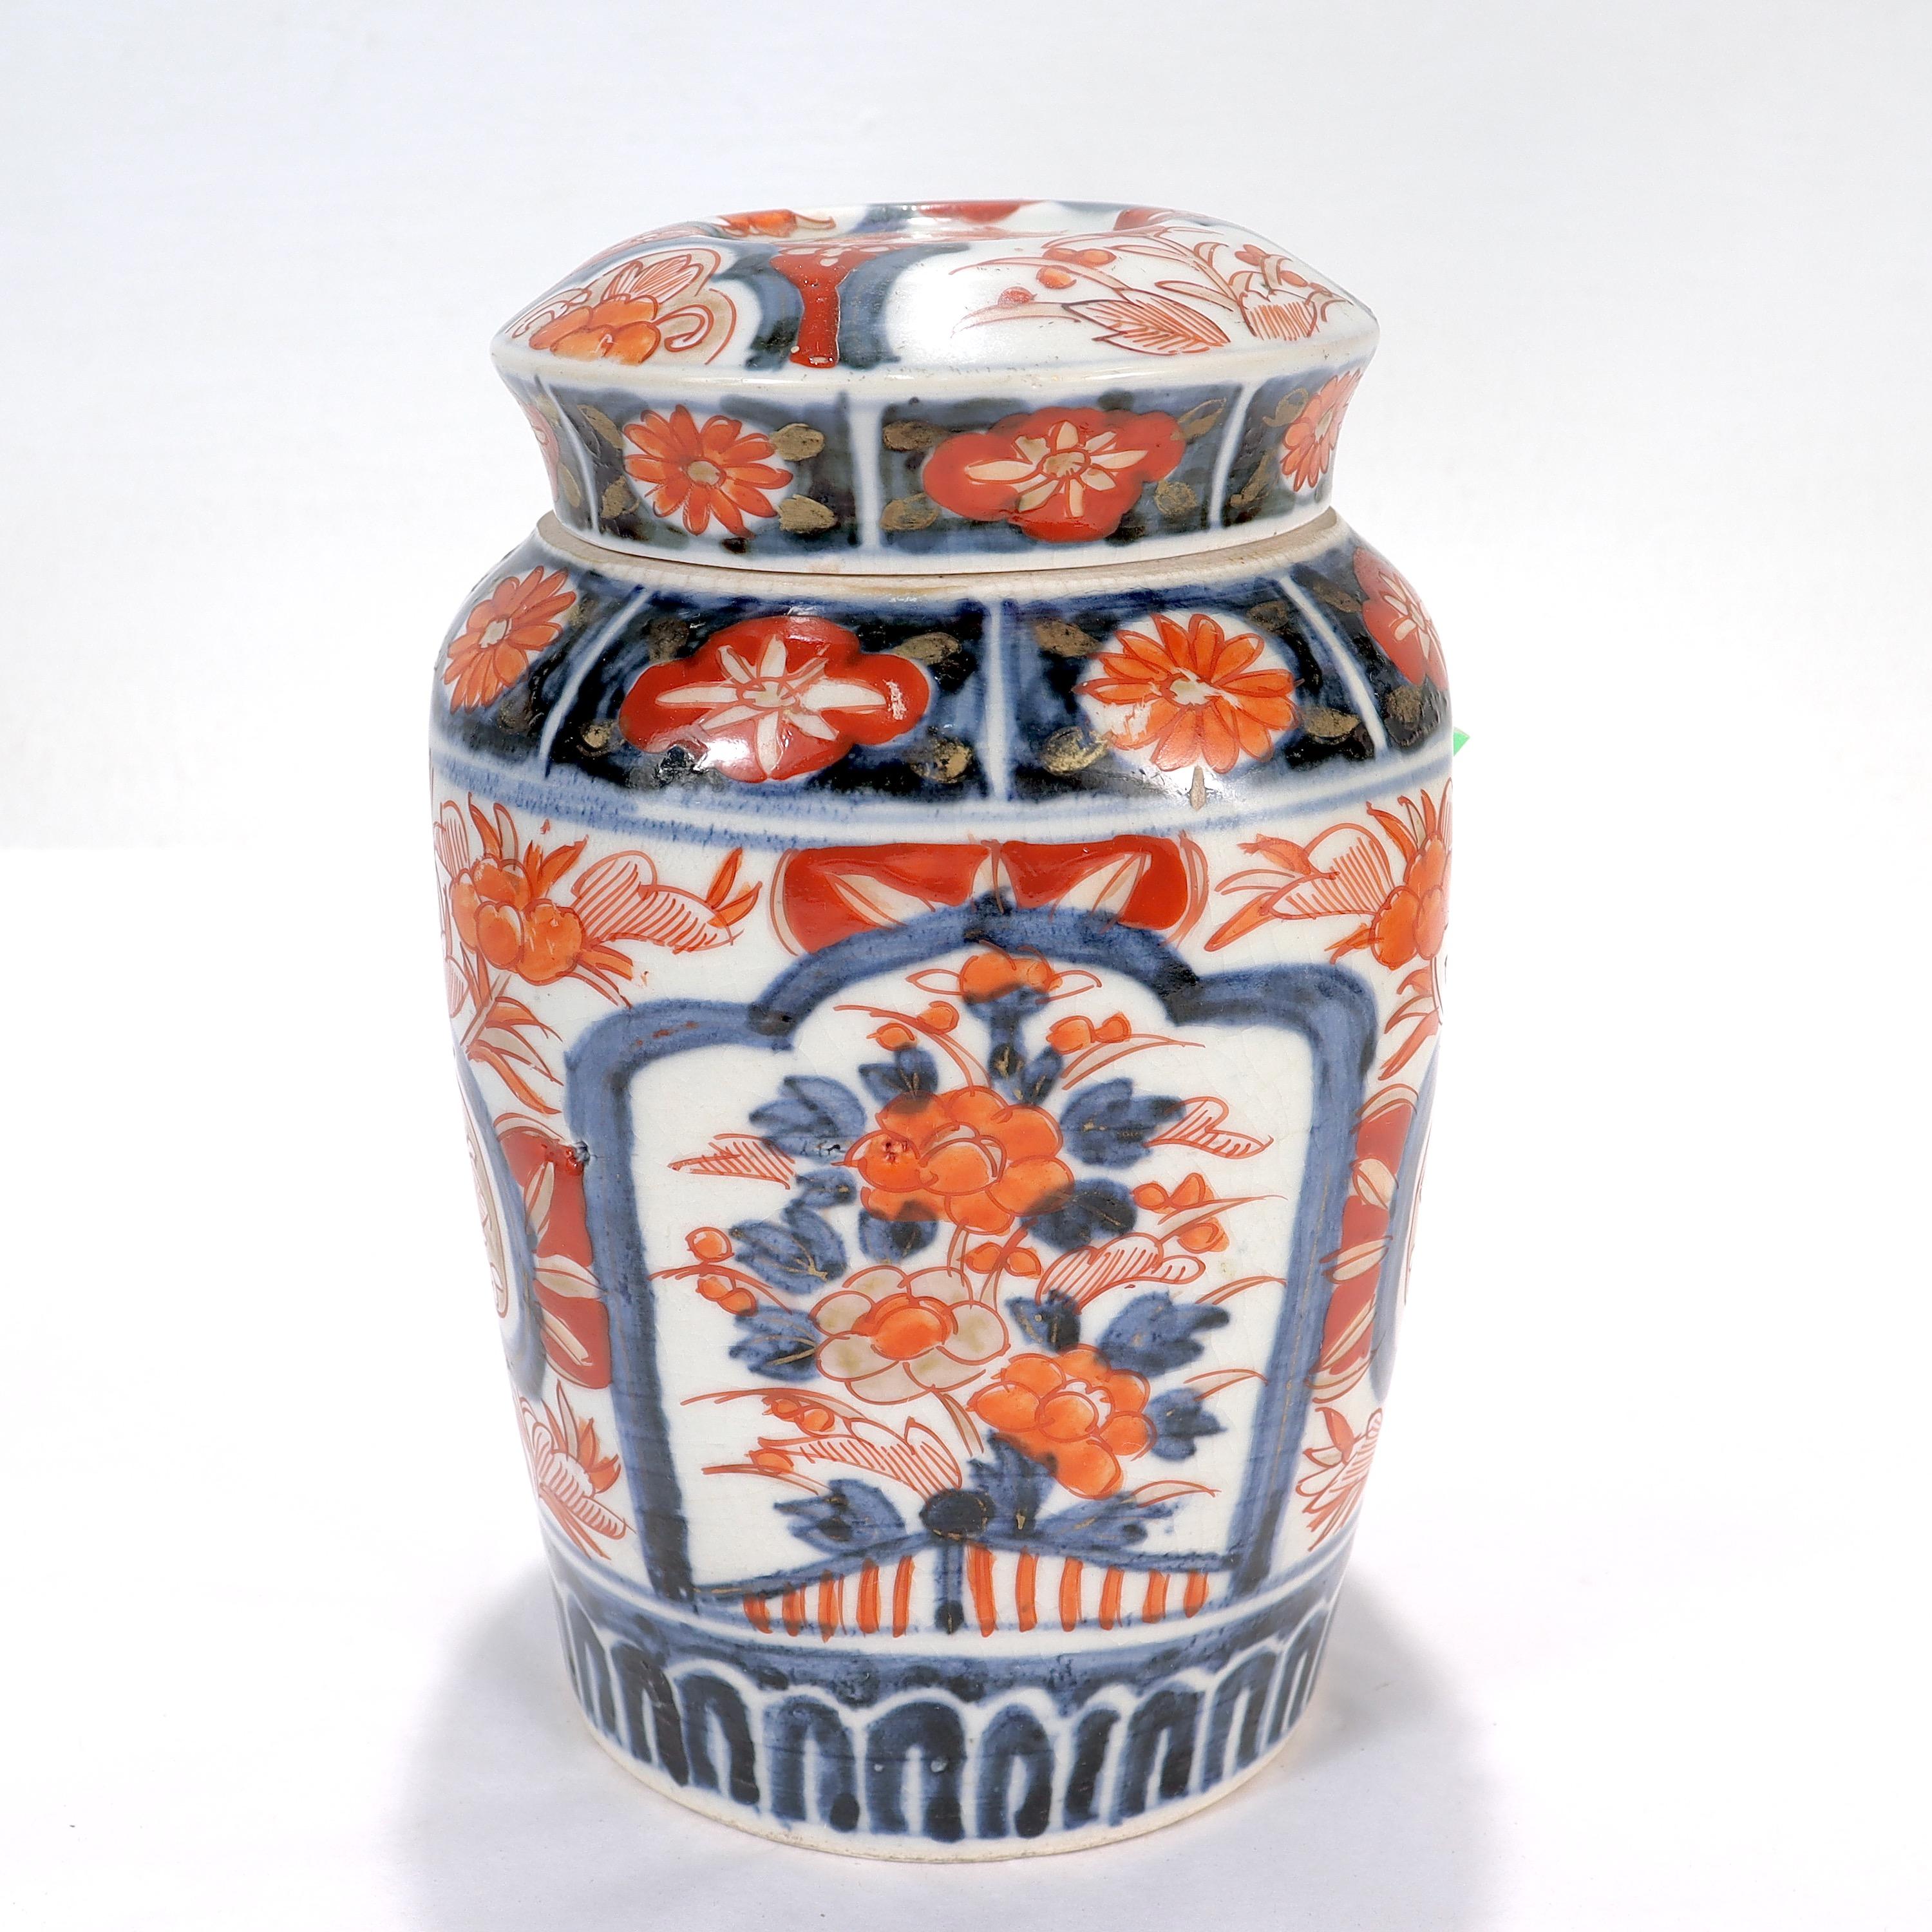 Meiji Old or Antique Japanese Imari Porcelain Covered Jar or Urn For Sale